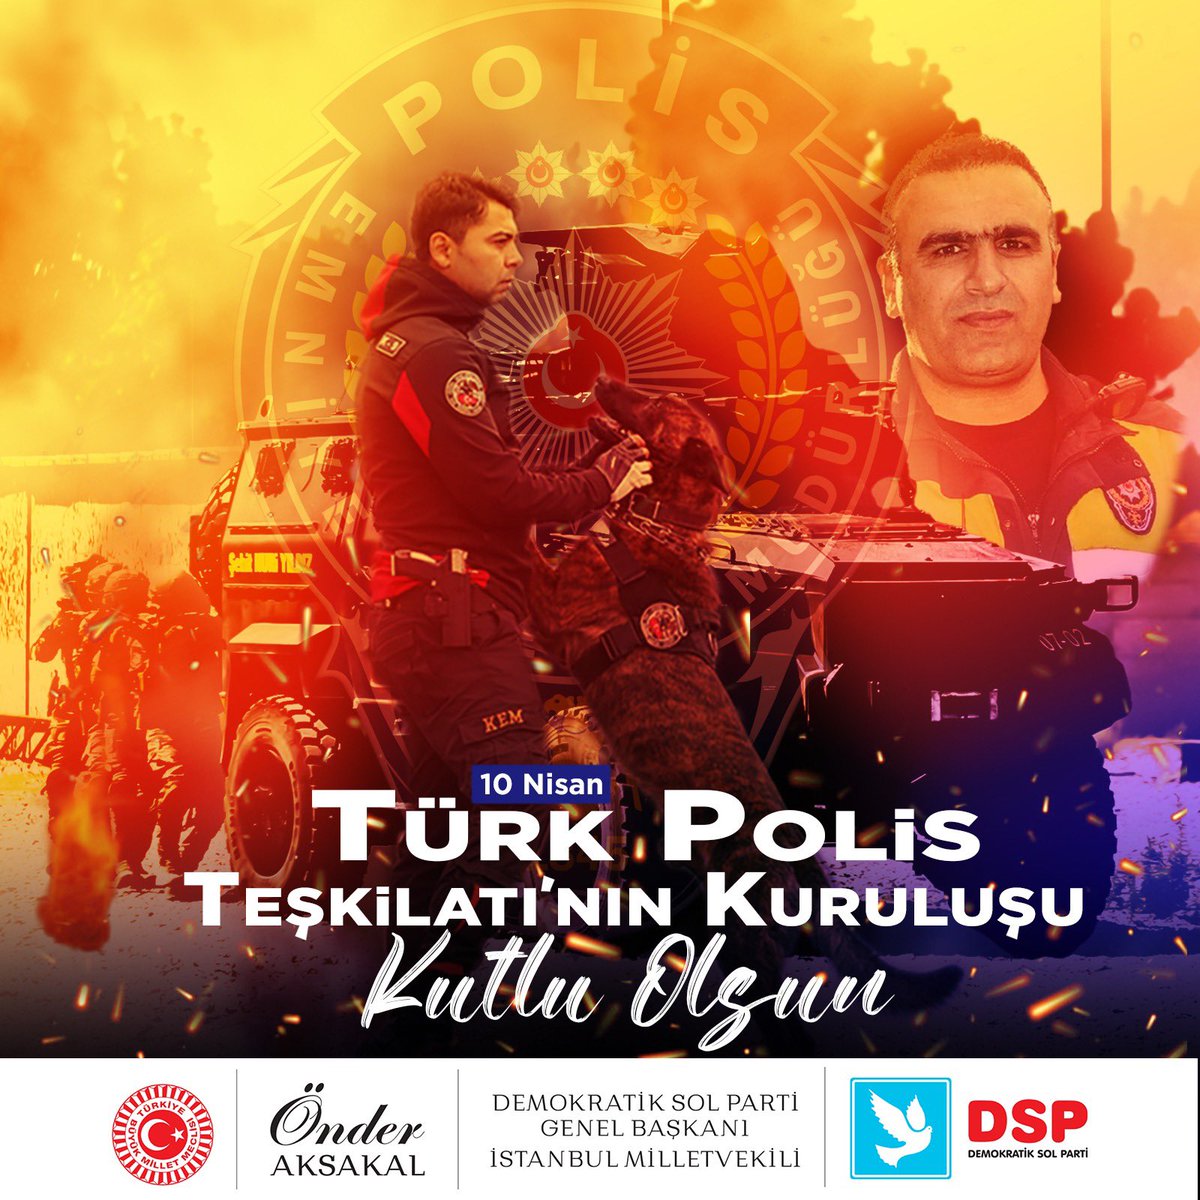 Türk Polis Teşkilatı'nın 179. kuruluş yıl dönümünü kutluyorum, gece gündüz demeden milletimizin huzur ve güvenliği için fedakârca çalışan polislerimize şükranlarımı sunuyorum. PolisHaftası #179Yıl #HuzurunTeminatı